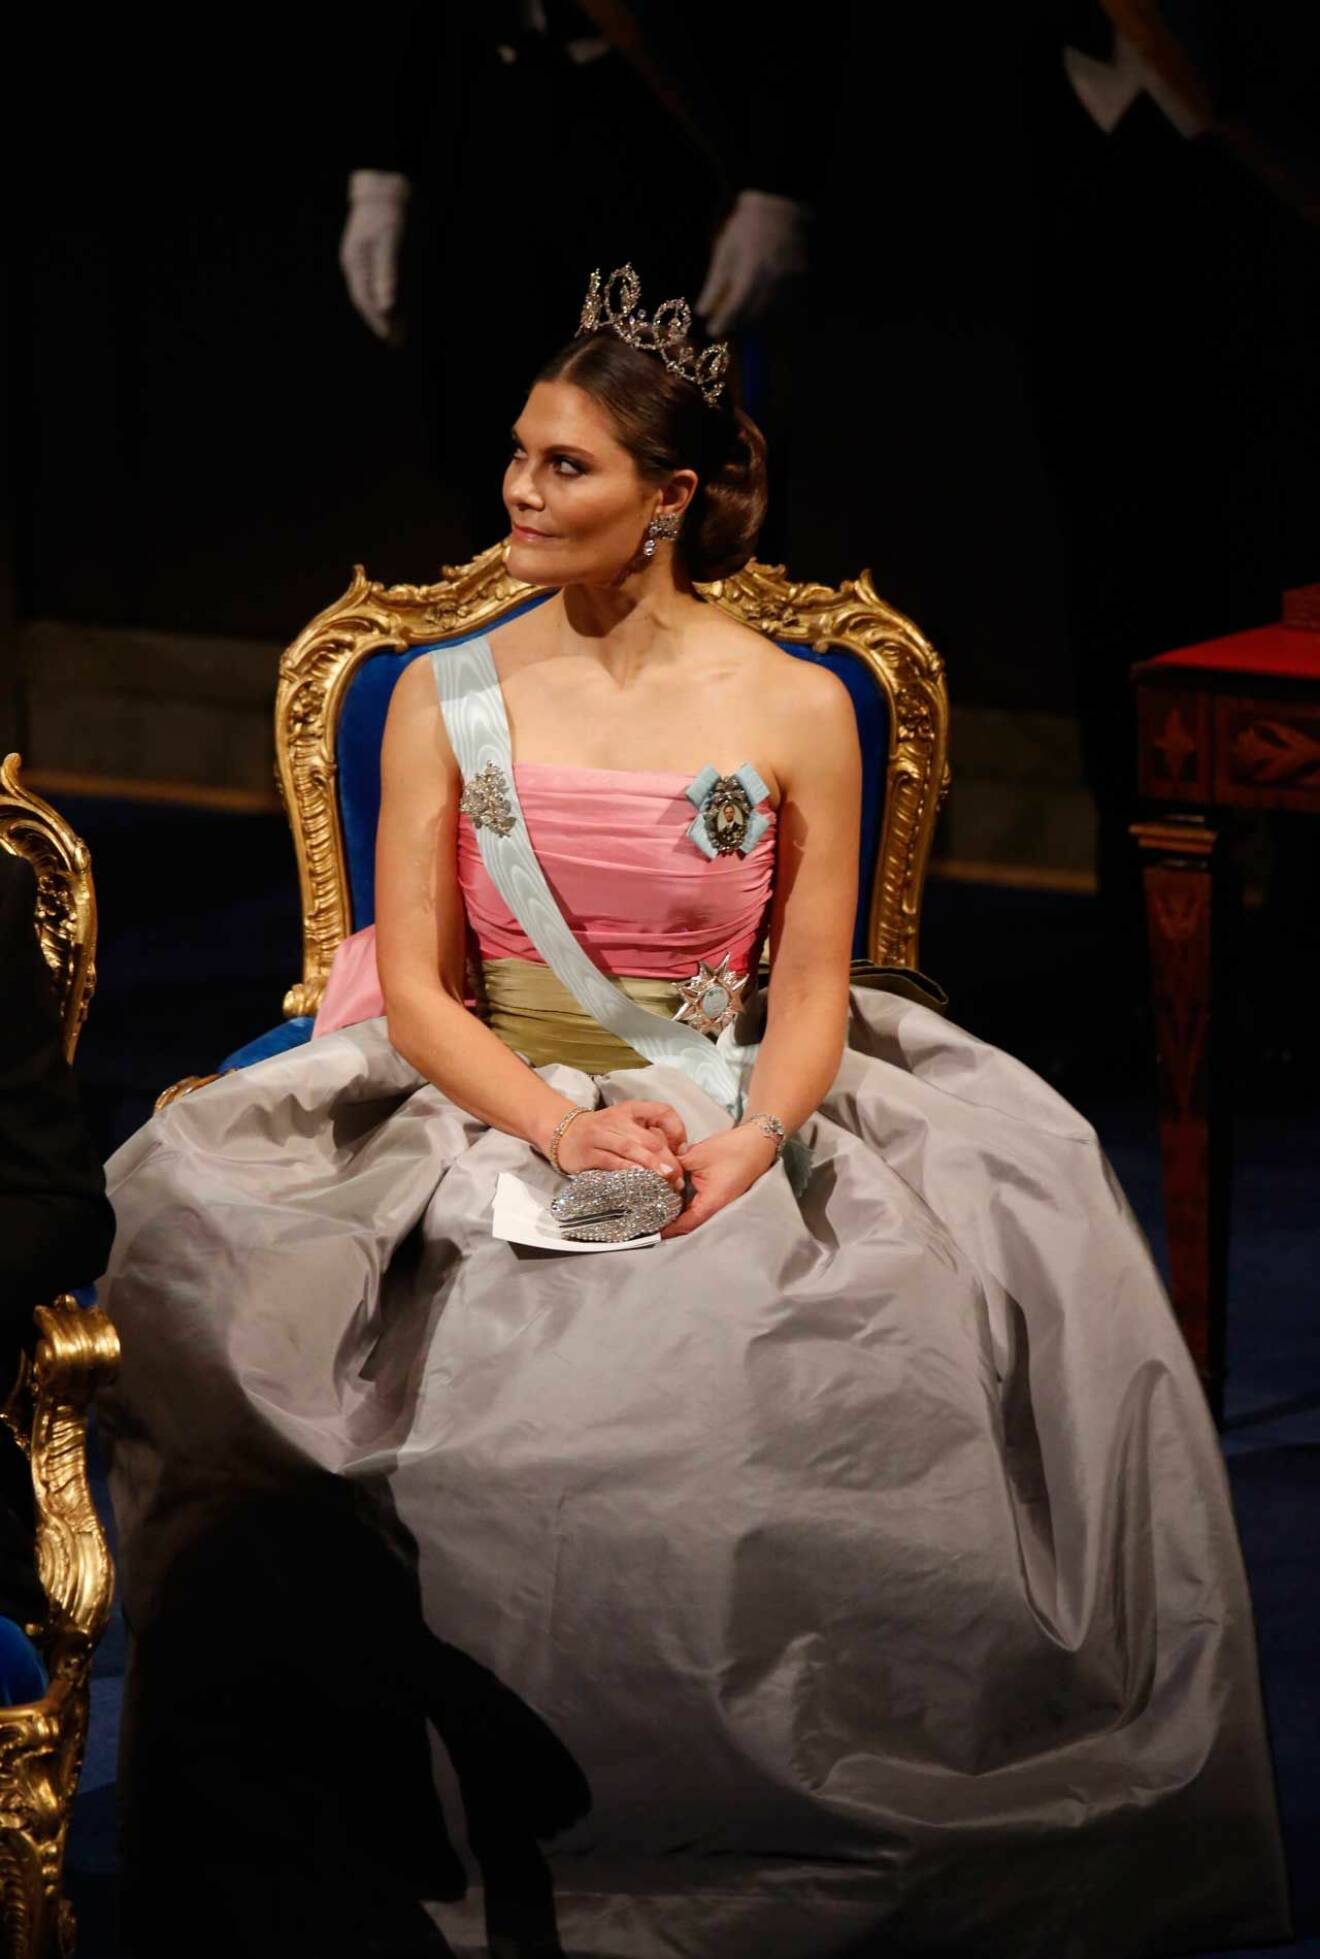 Kronprinsessan Victoria på Nobel i drottning Silvias klänning